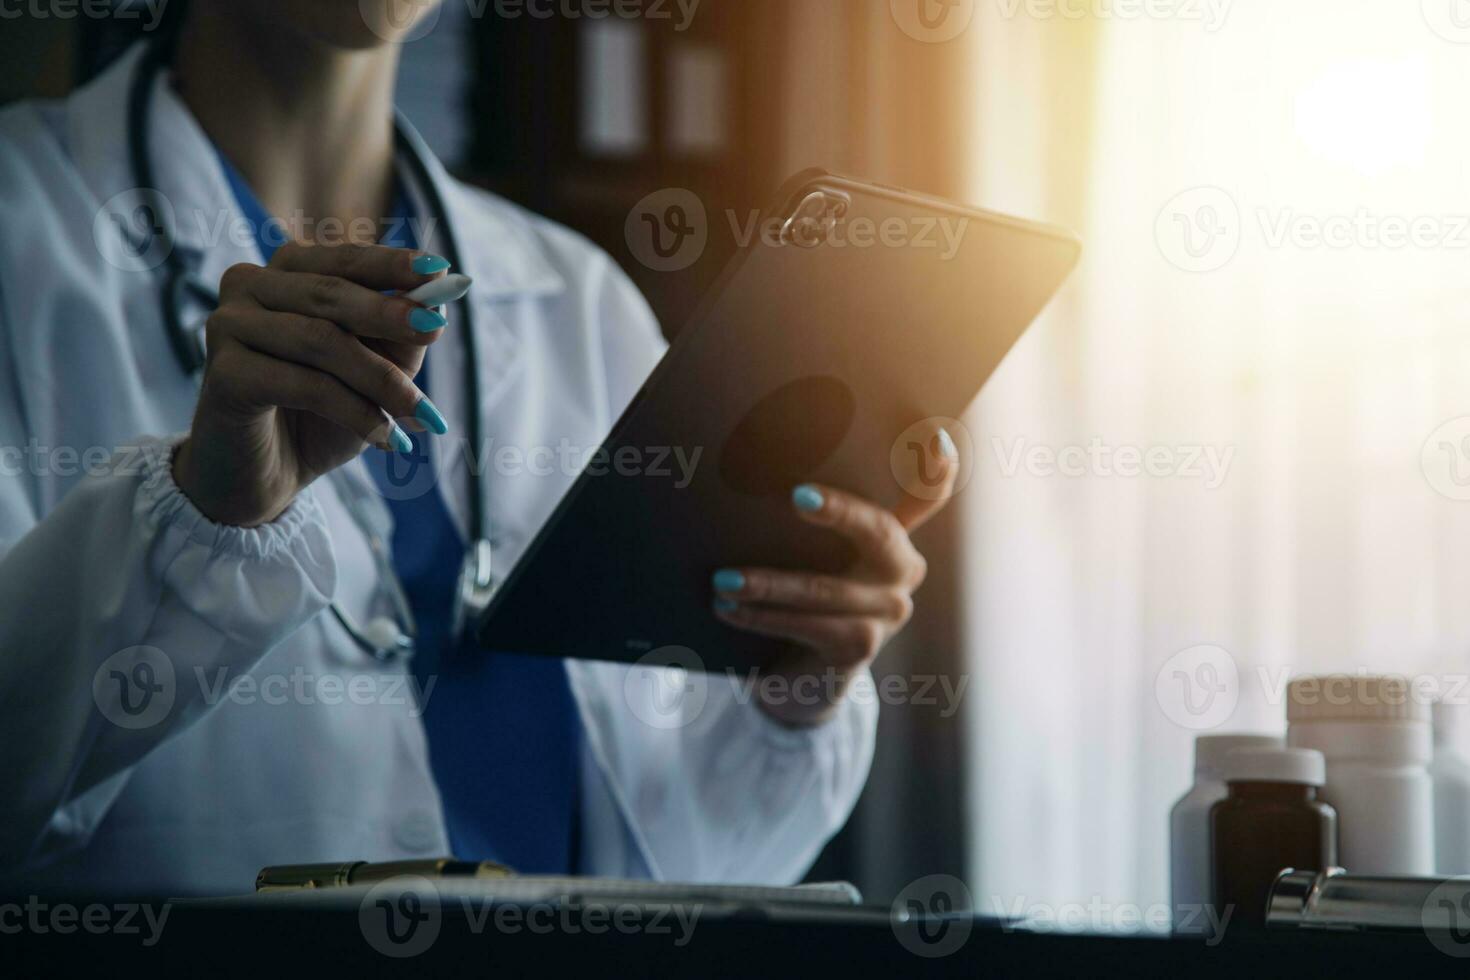 läkare hand håller penna skriver patienthistorik lista på urklipp om medicinering och behandling. foto